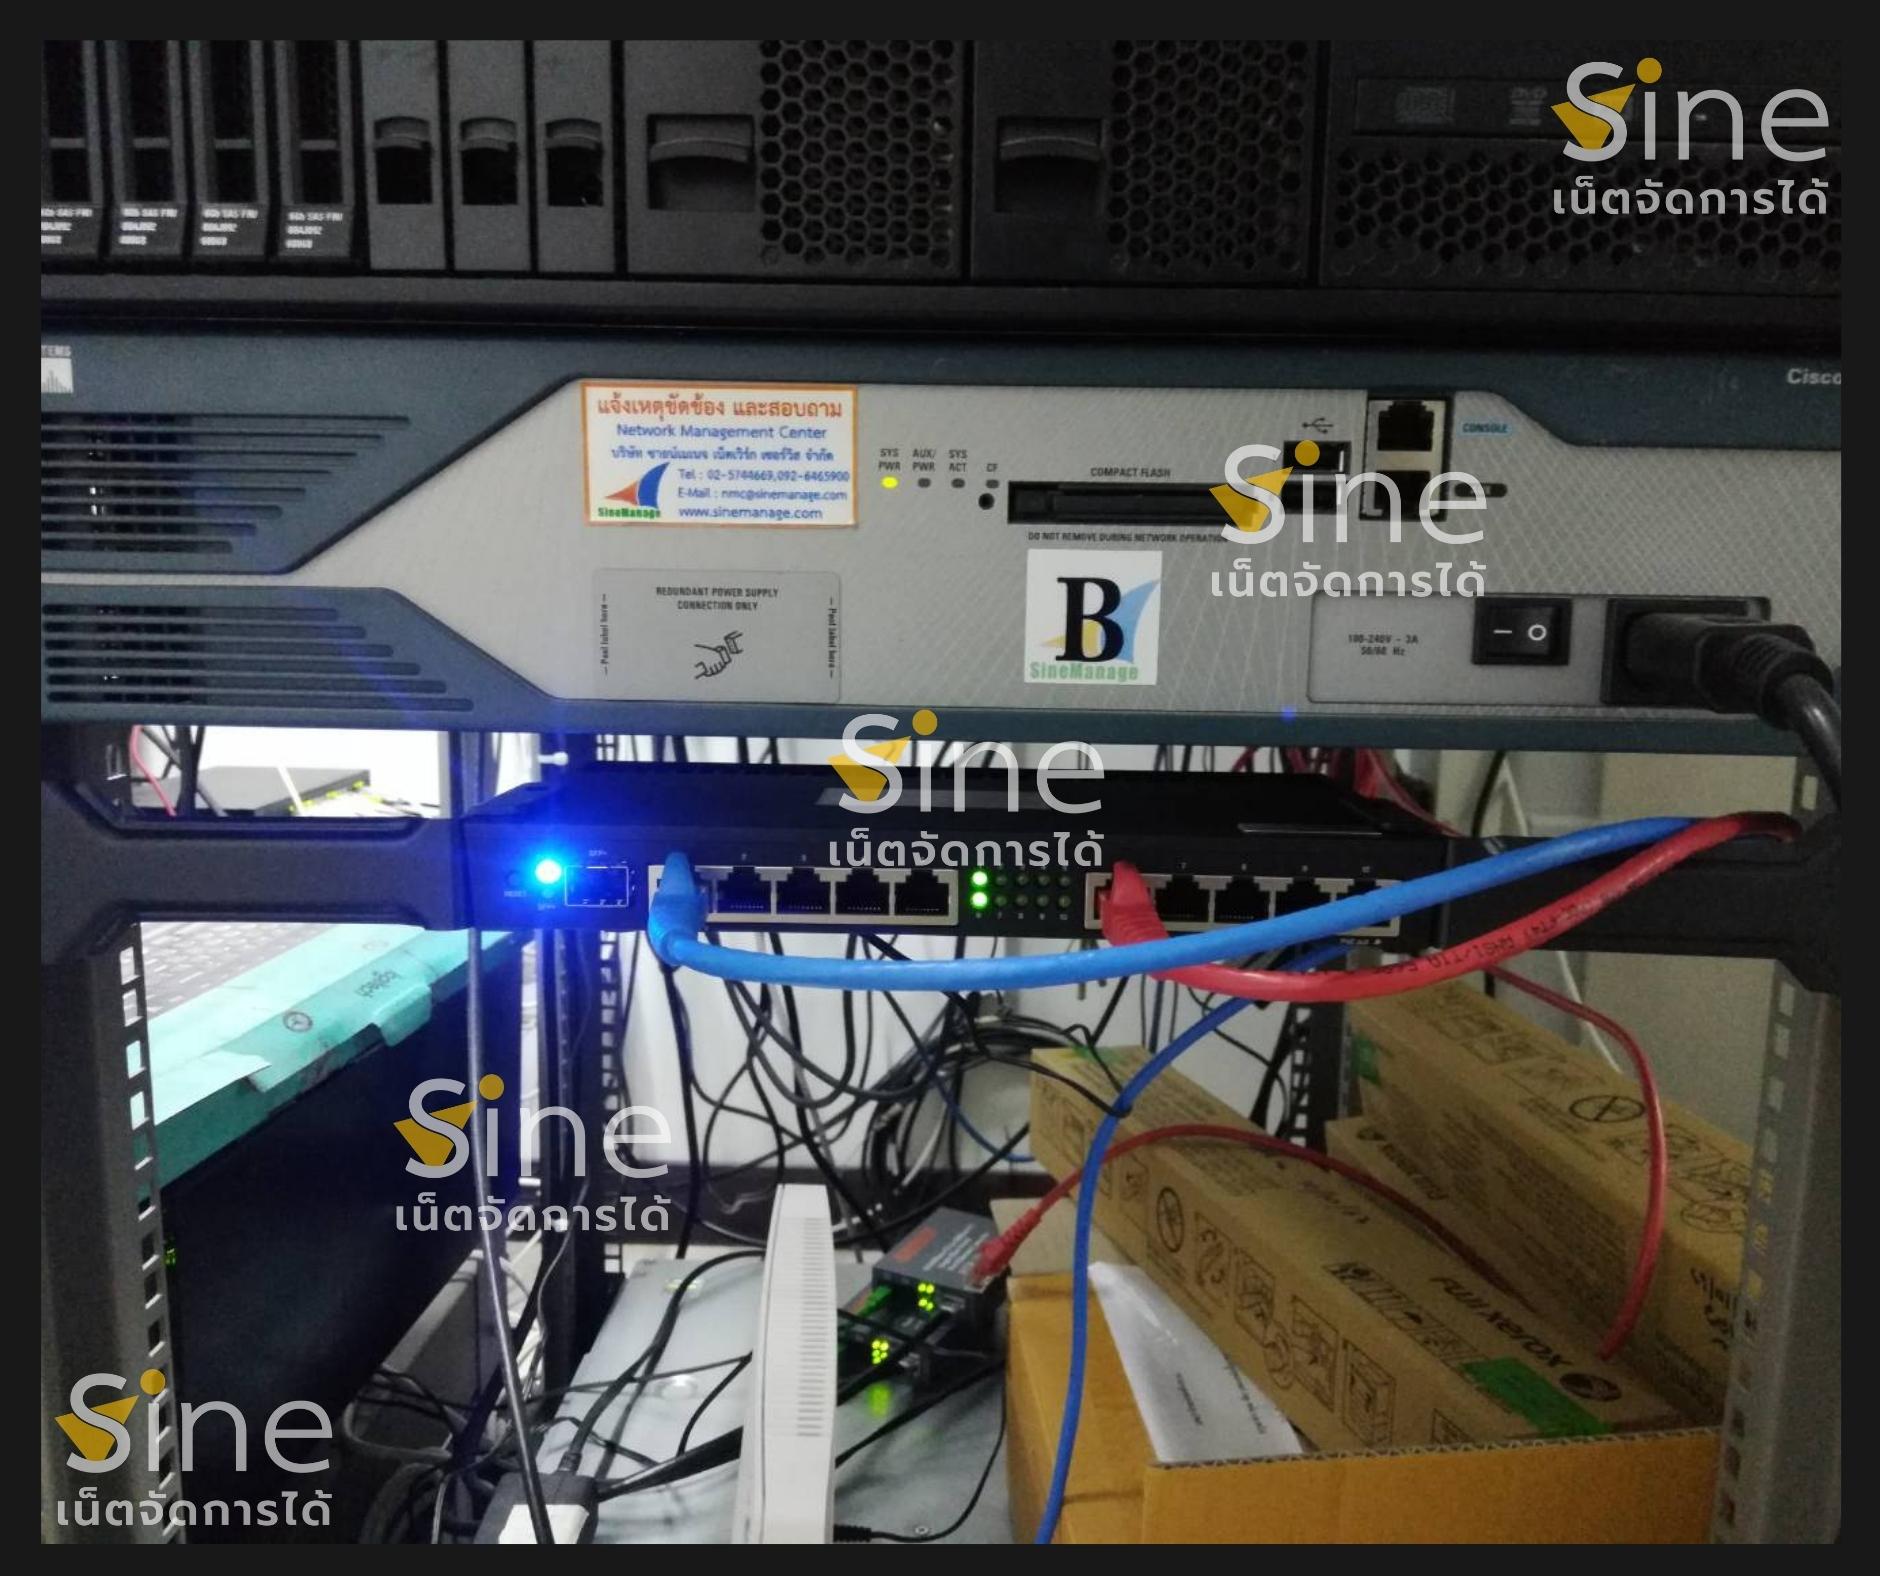 ติดตั้ง SineWAN เชื่อมโยงสาขา เครือข่ายสาขา WAN VPN Network Internet เน็ตระหว่างสาขา